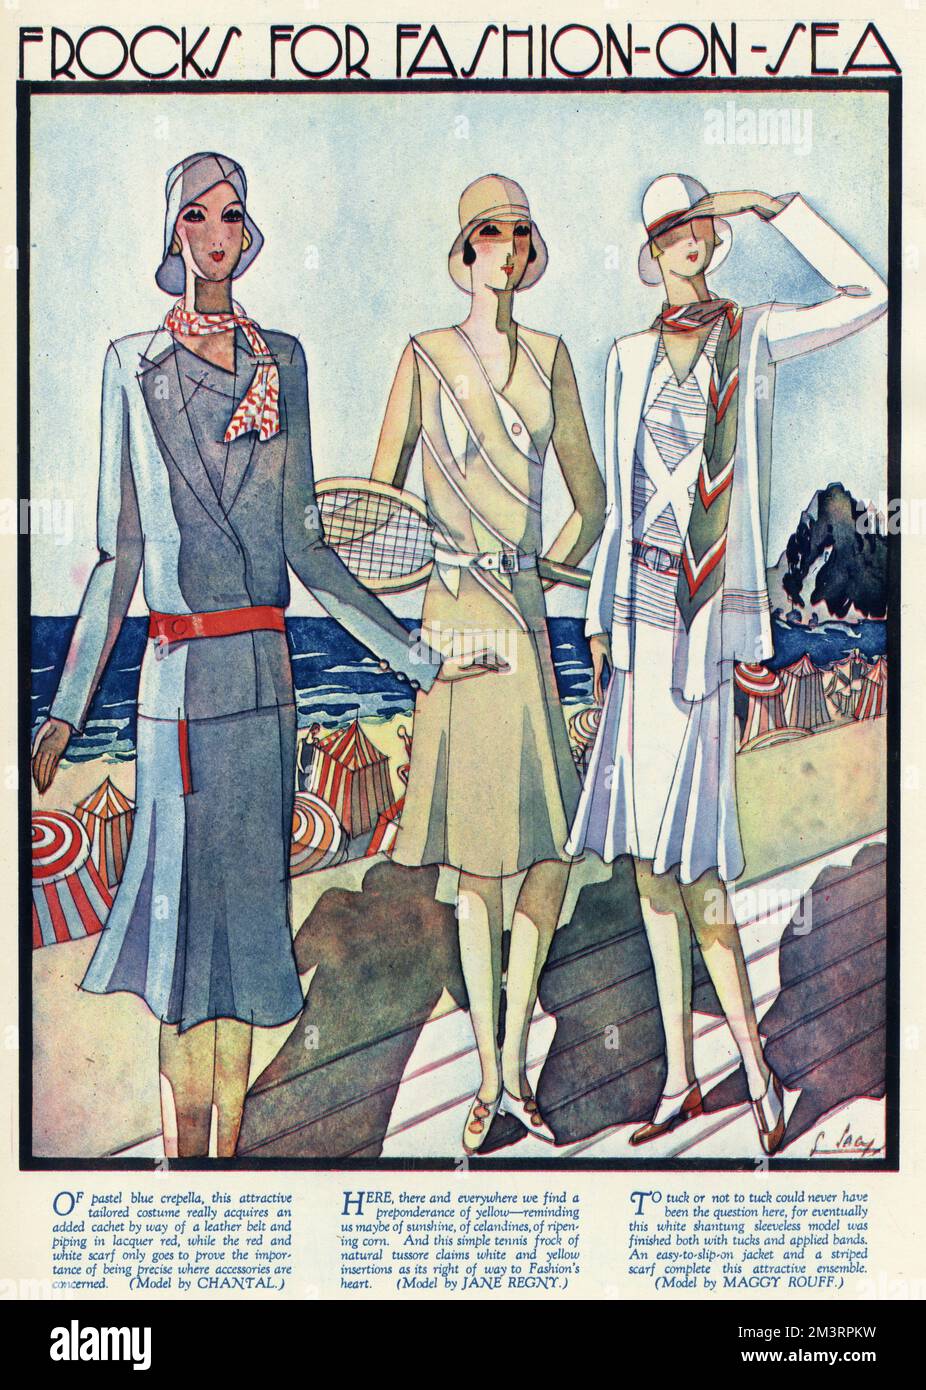 « Des grenouille pour la mode sur la mer ». Femmes portant des vêtements pour une journée à la plage, les designers Chantal, Jane Regny et Maggy Rouff. 1929 Banque D'Images